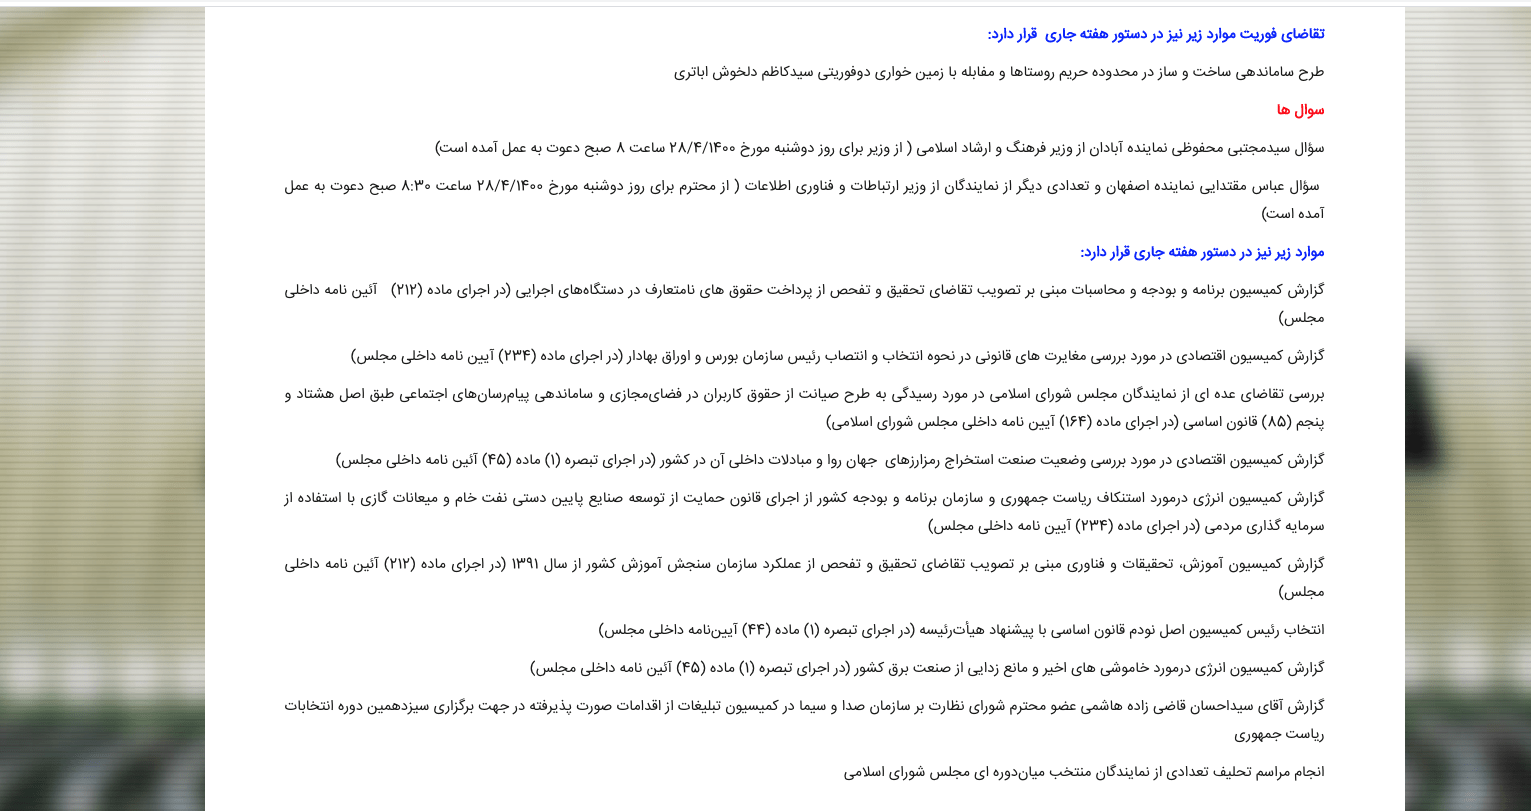 عملکرد مجلس همزمان با اعتراضات مردم در خوزستان